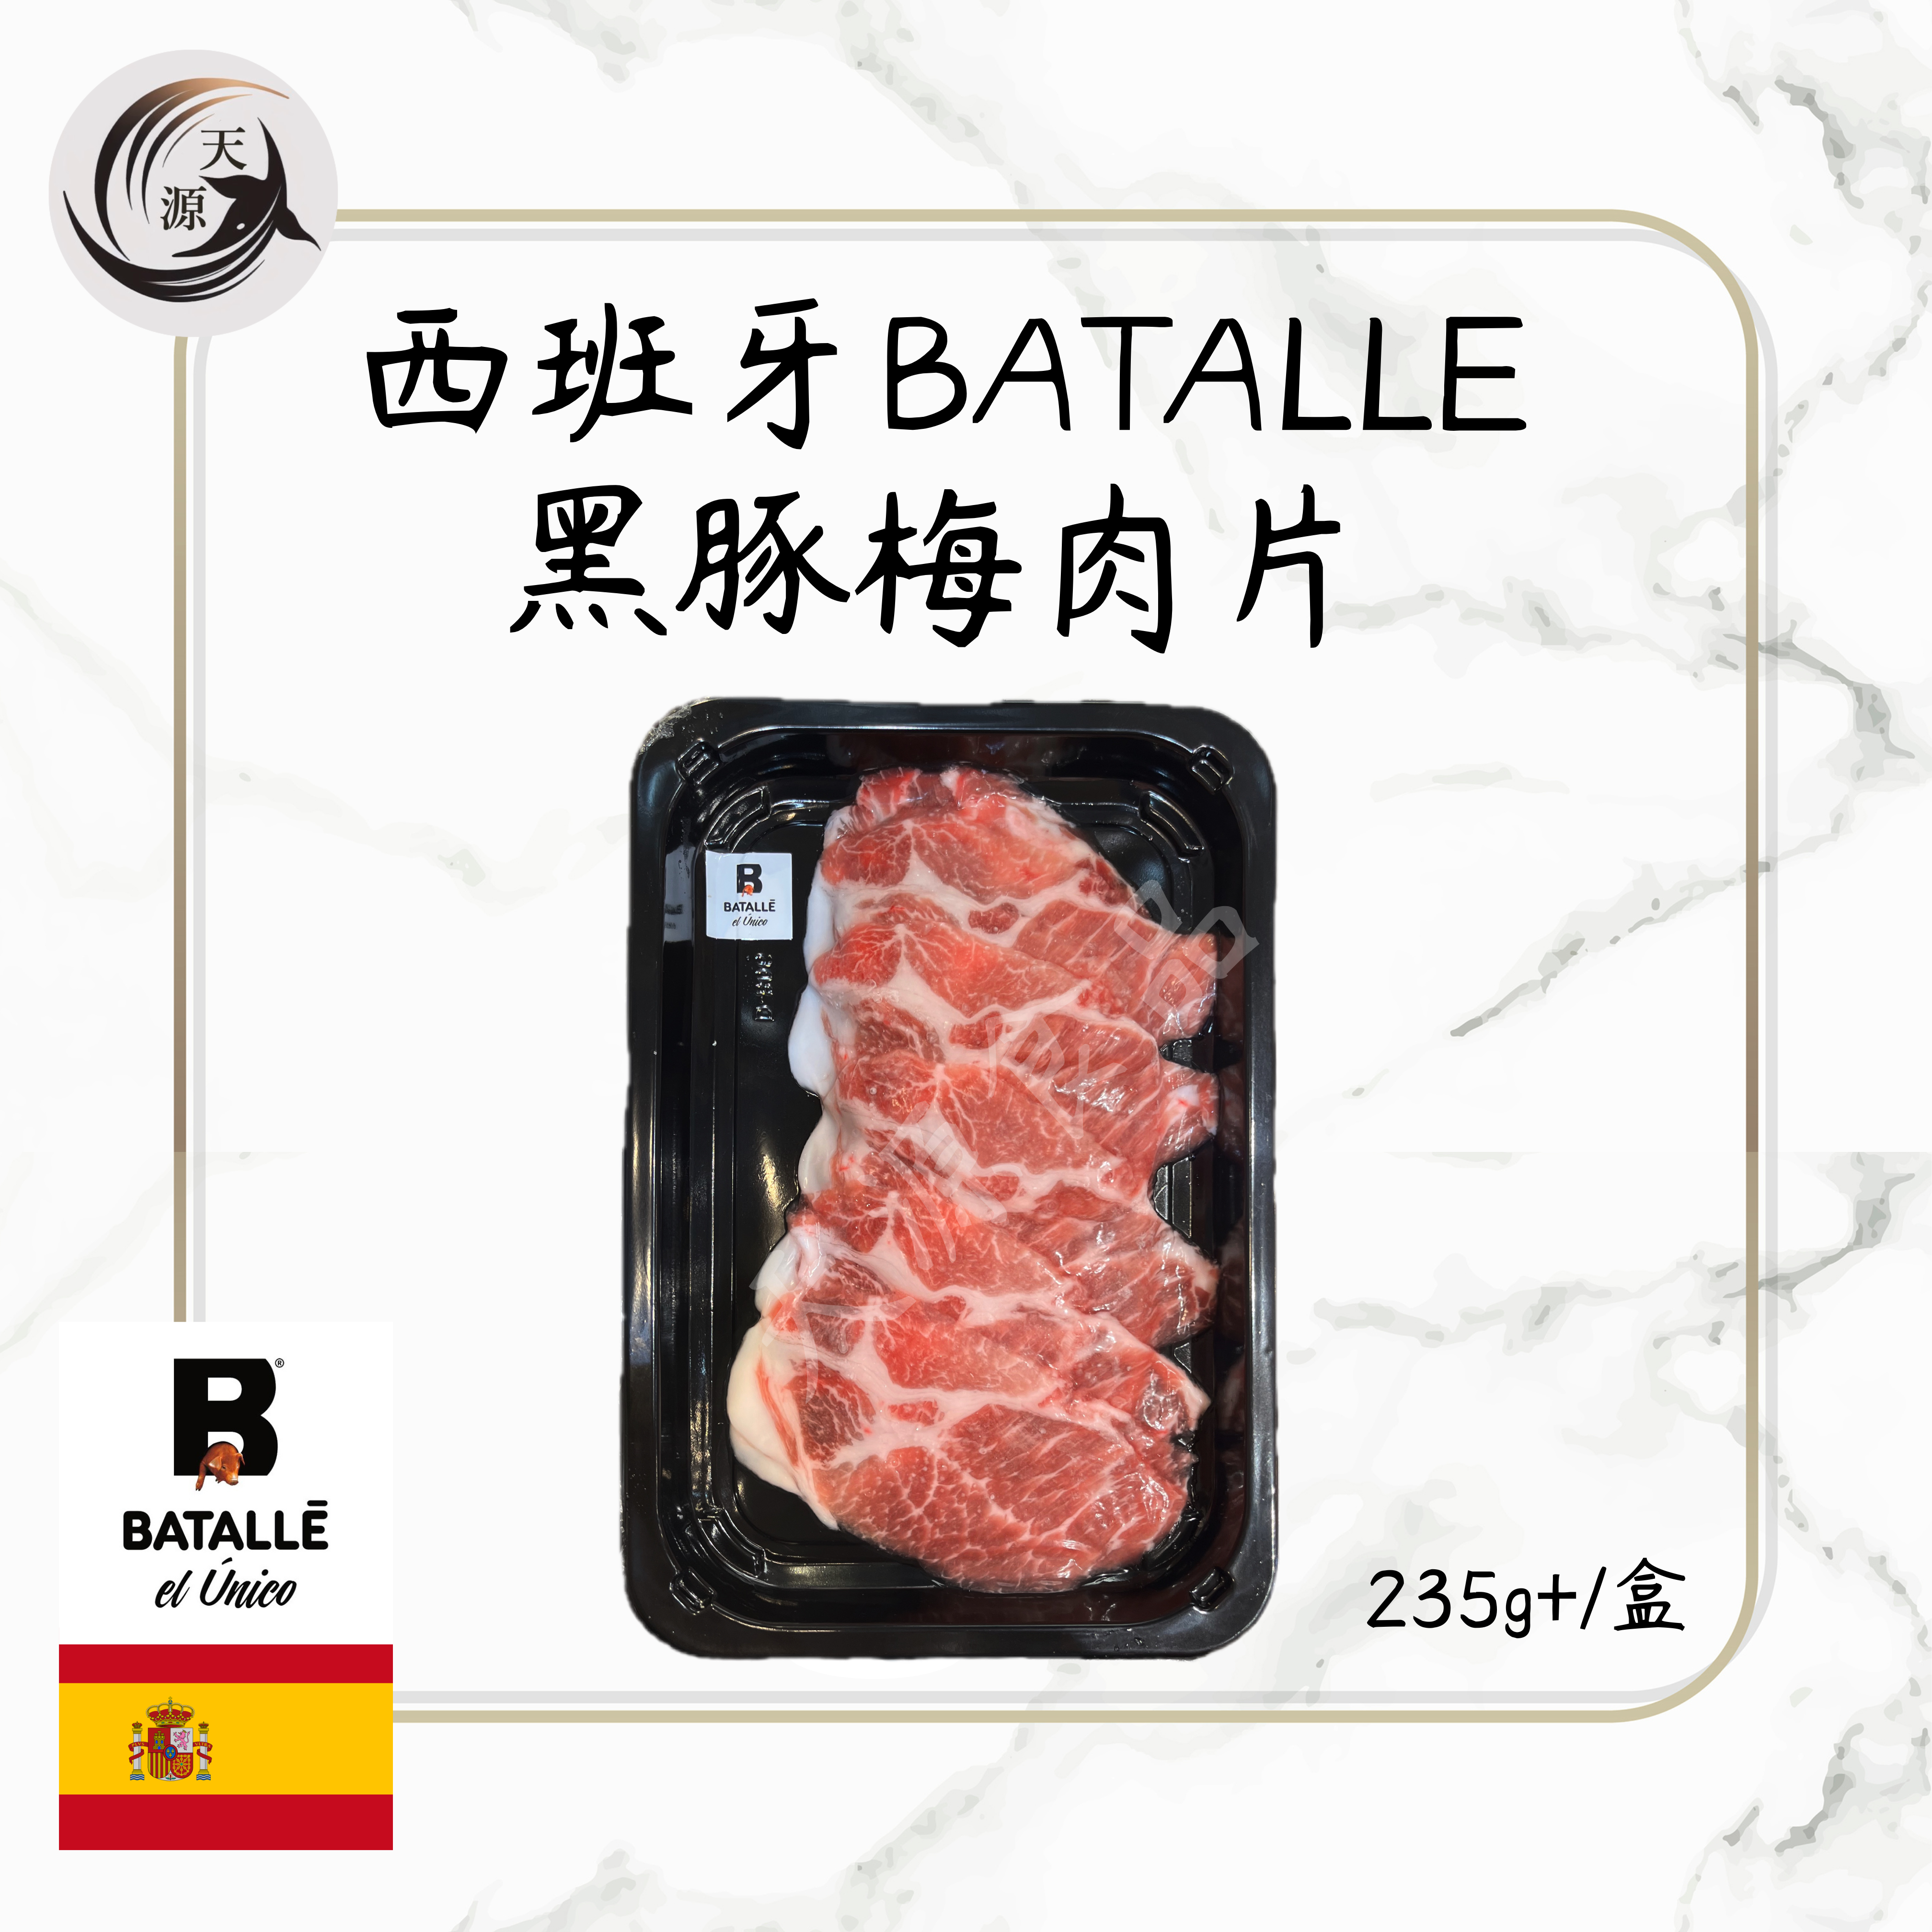 Spanish BATALLE Black Pork Plum Sliced